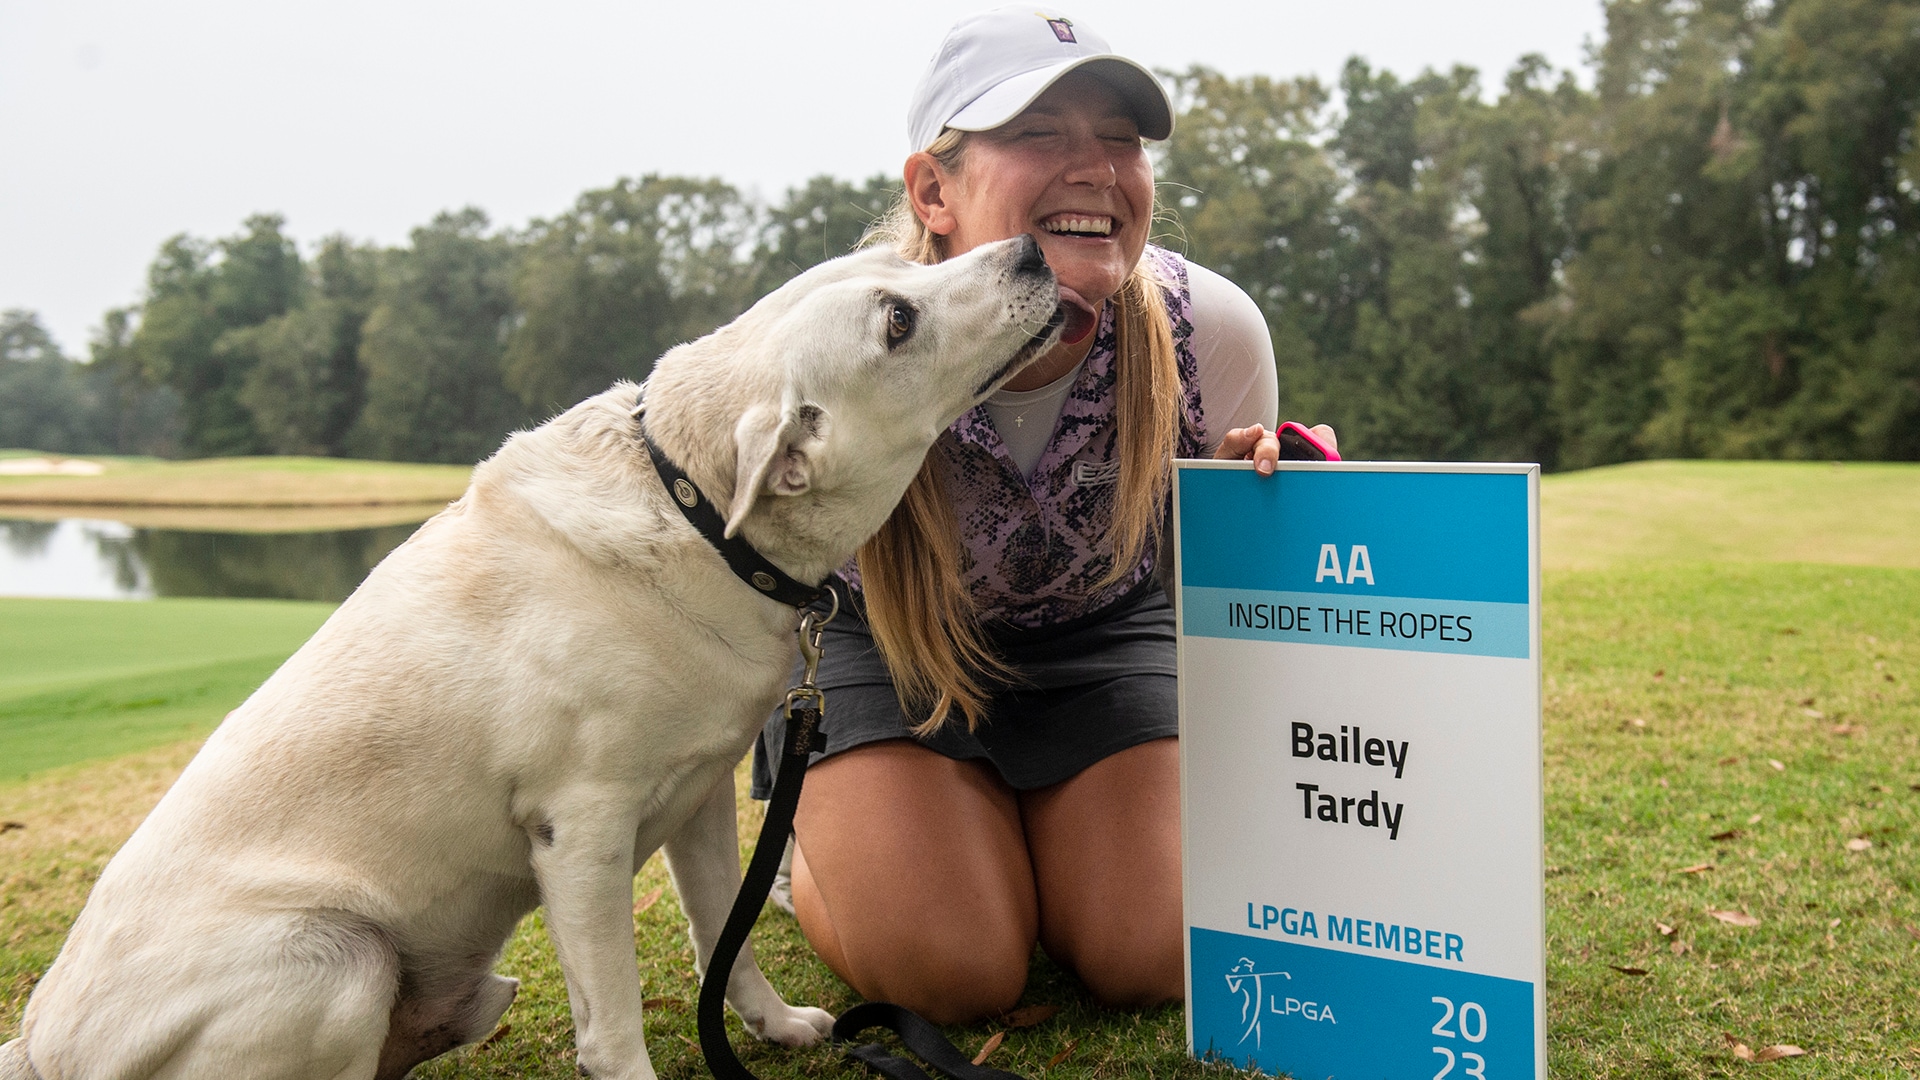 After several close-calls, Bailey Tardy finally earns LPGA card at Q-Series